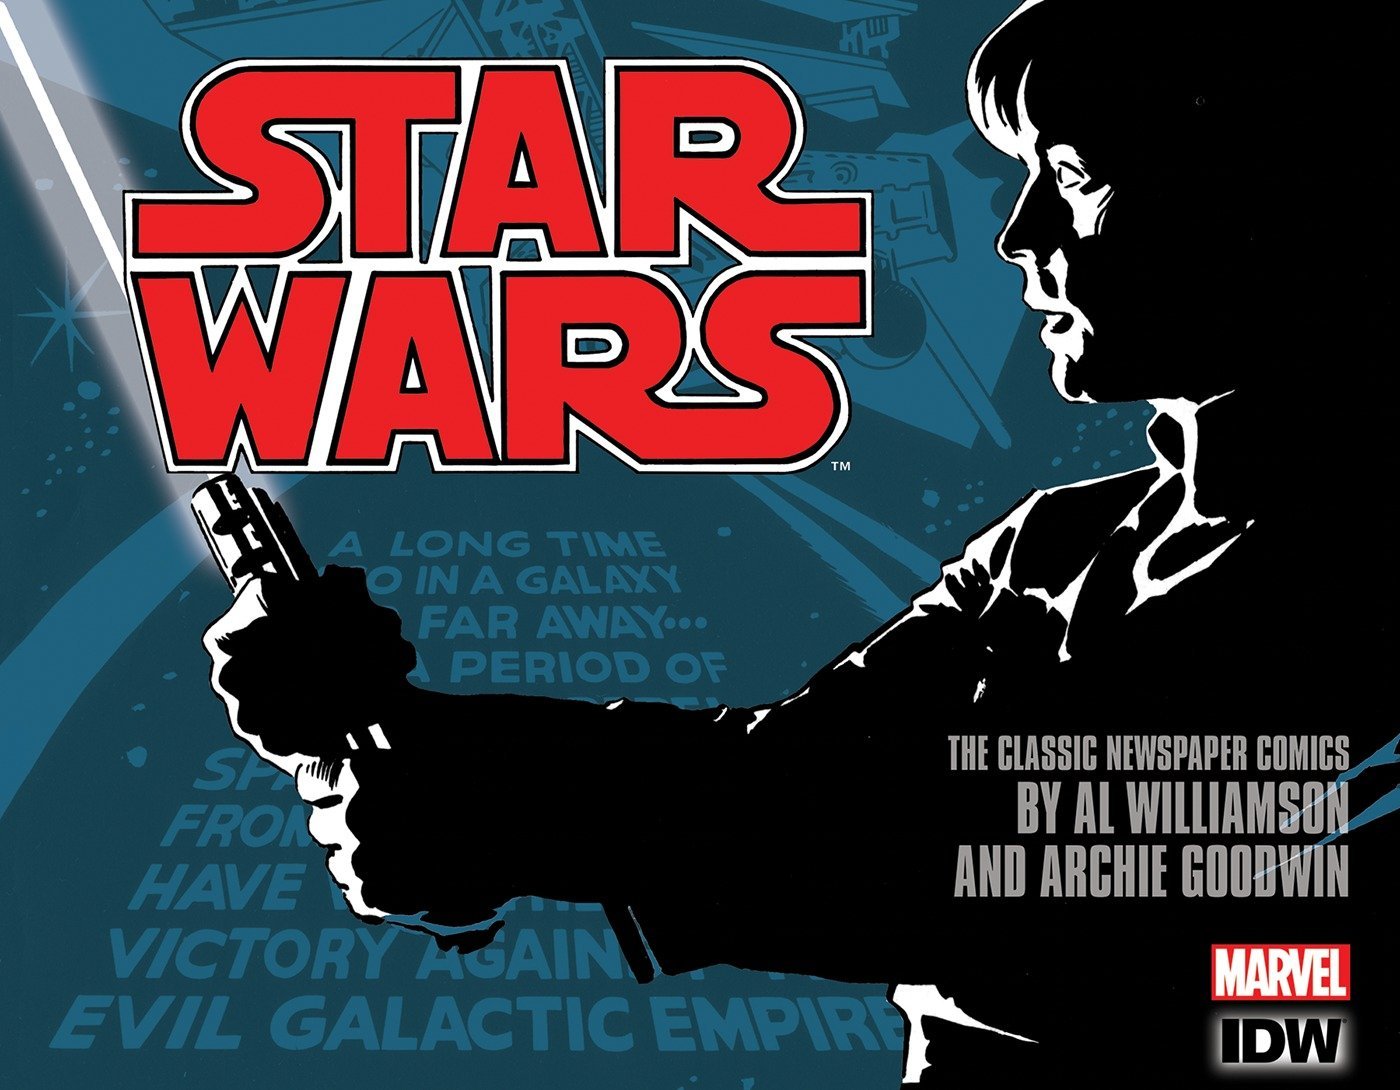 Star Wars: The Classic Newspaper Comics Vol. 3 (Star Wars Newspaper Comics)